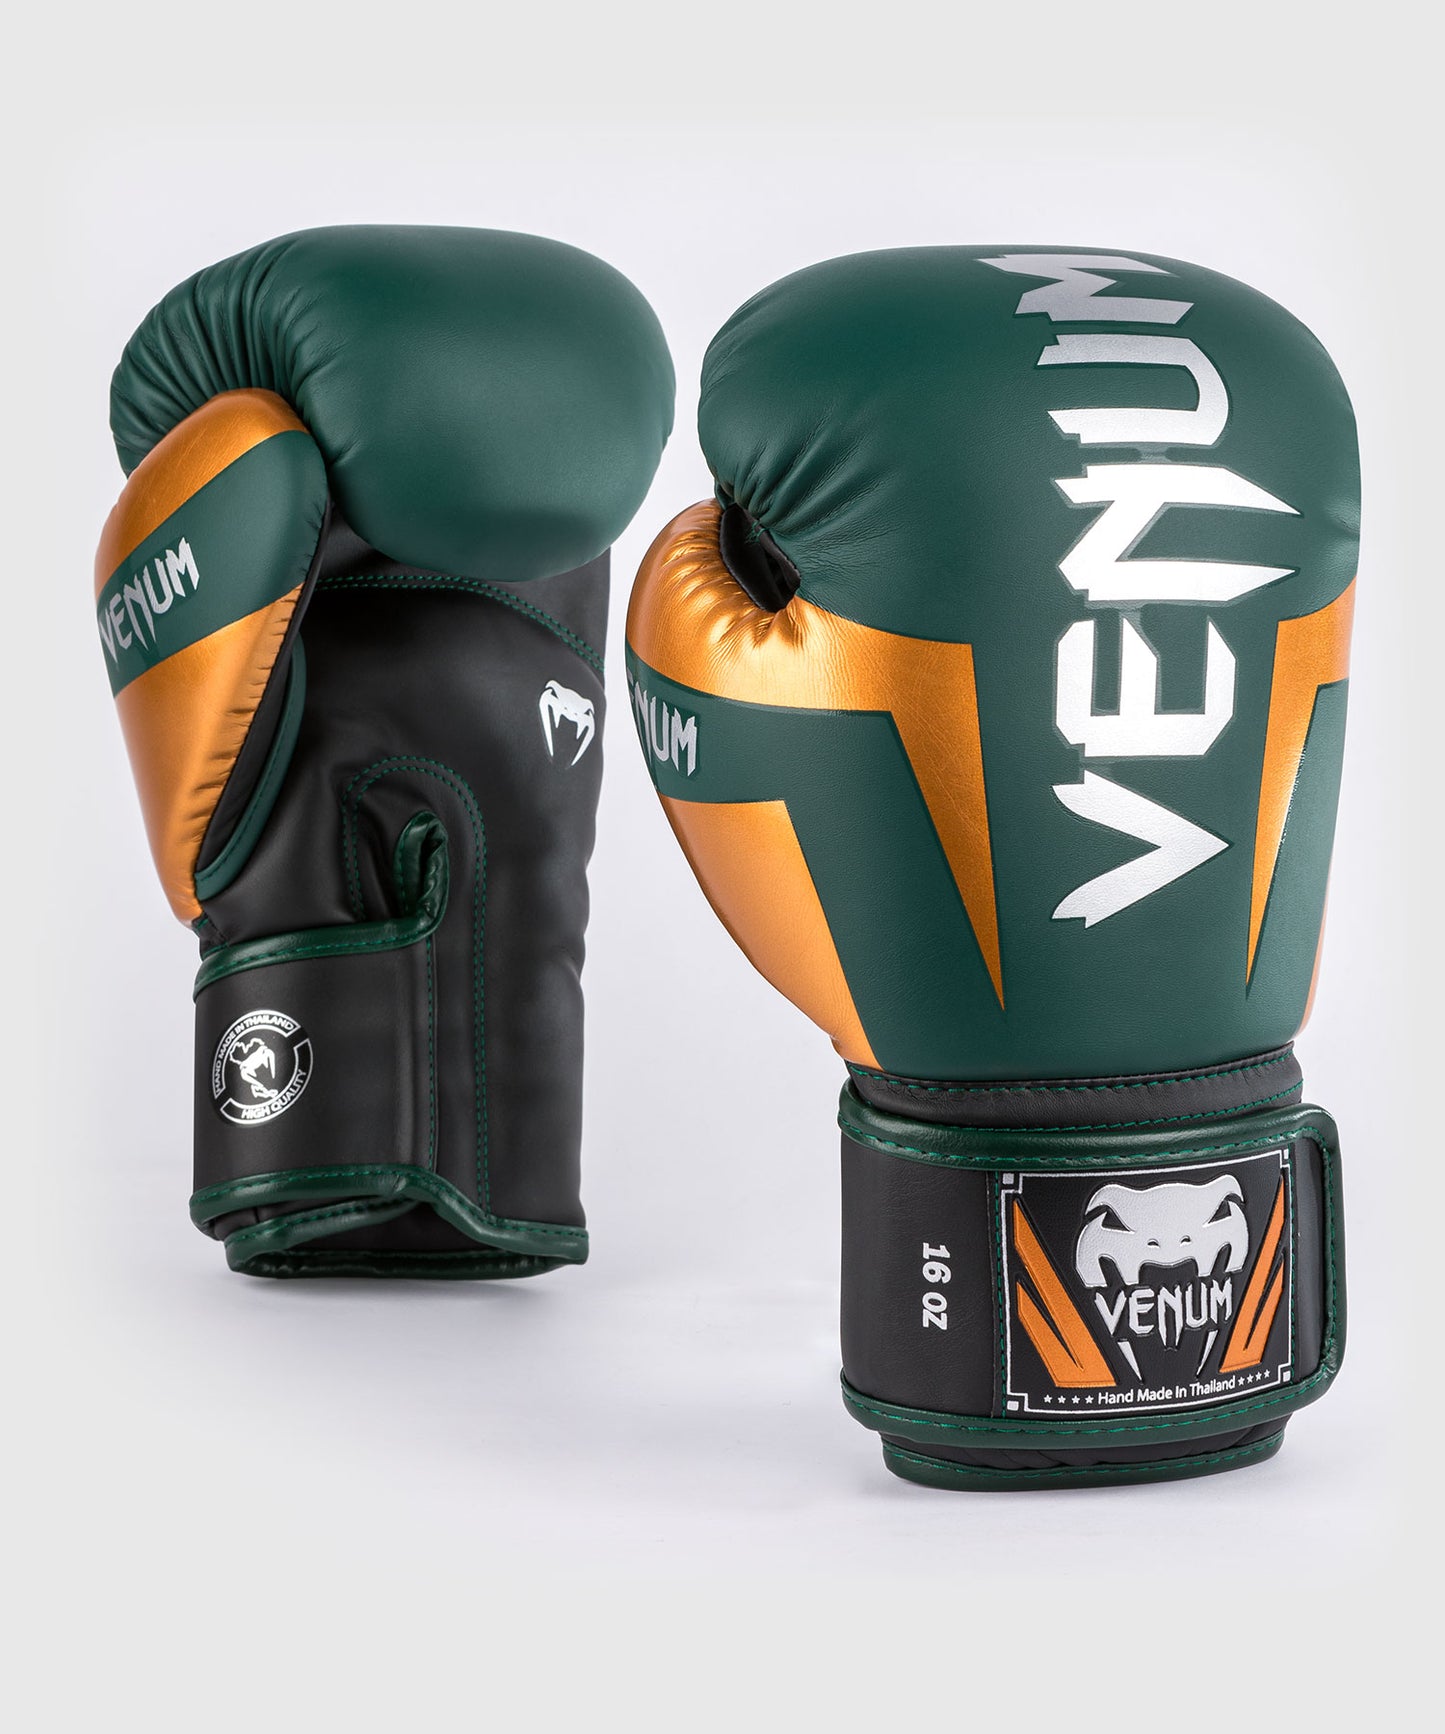 Боксерские перчатки Venum Elite - зеленый/бронзовый/серебристый